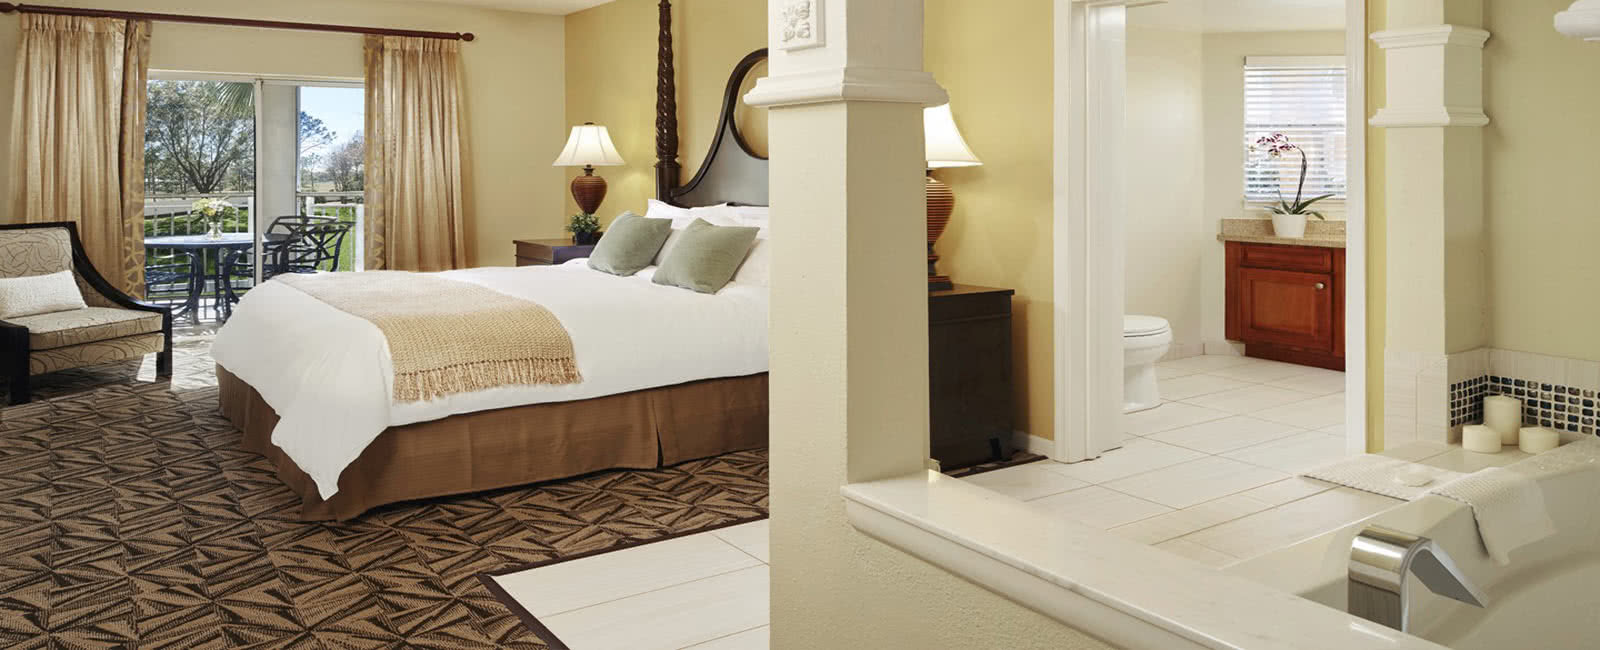 Bedroom and Tub at Hilton Grand Vacations Club at SeaWorld in Orlando, Florida